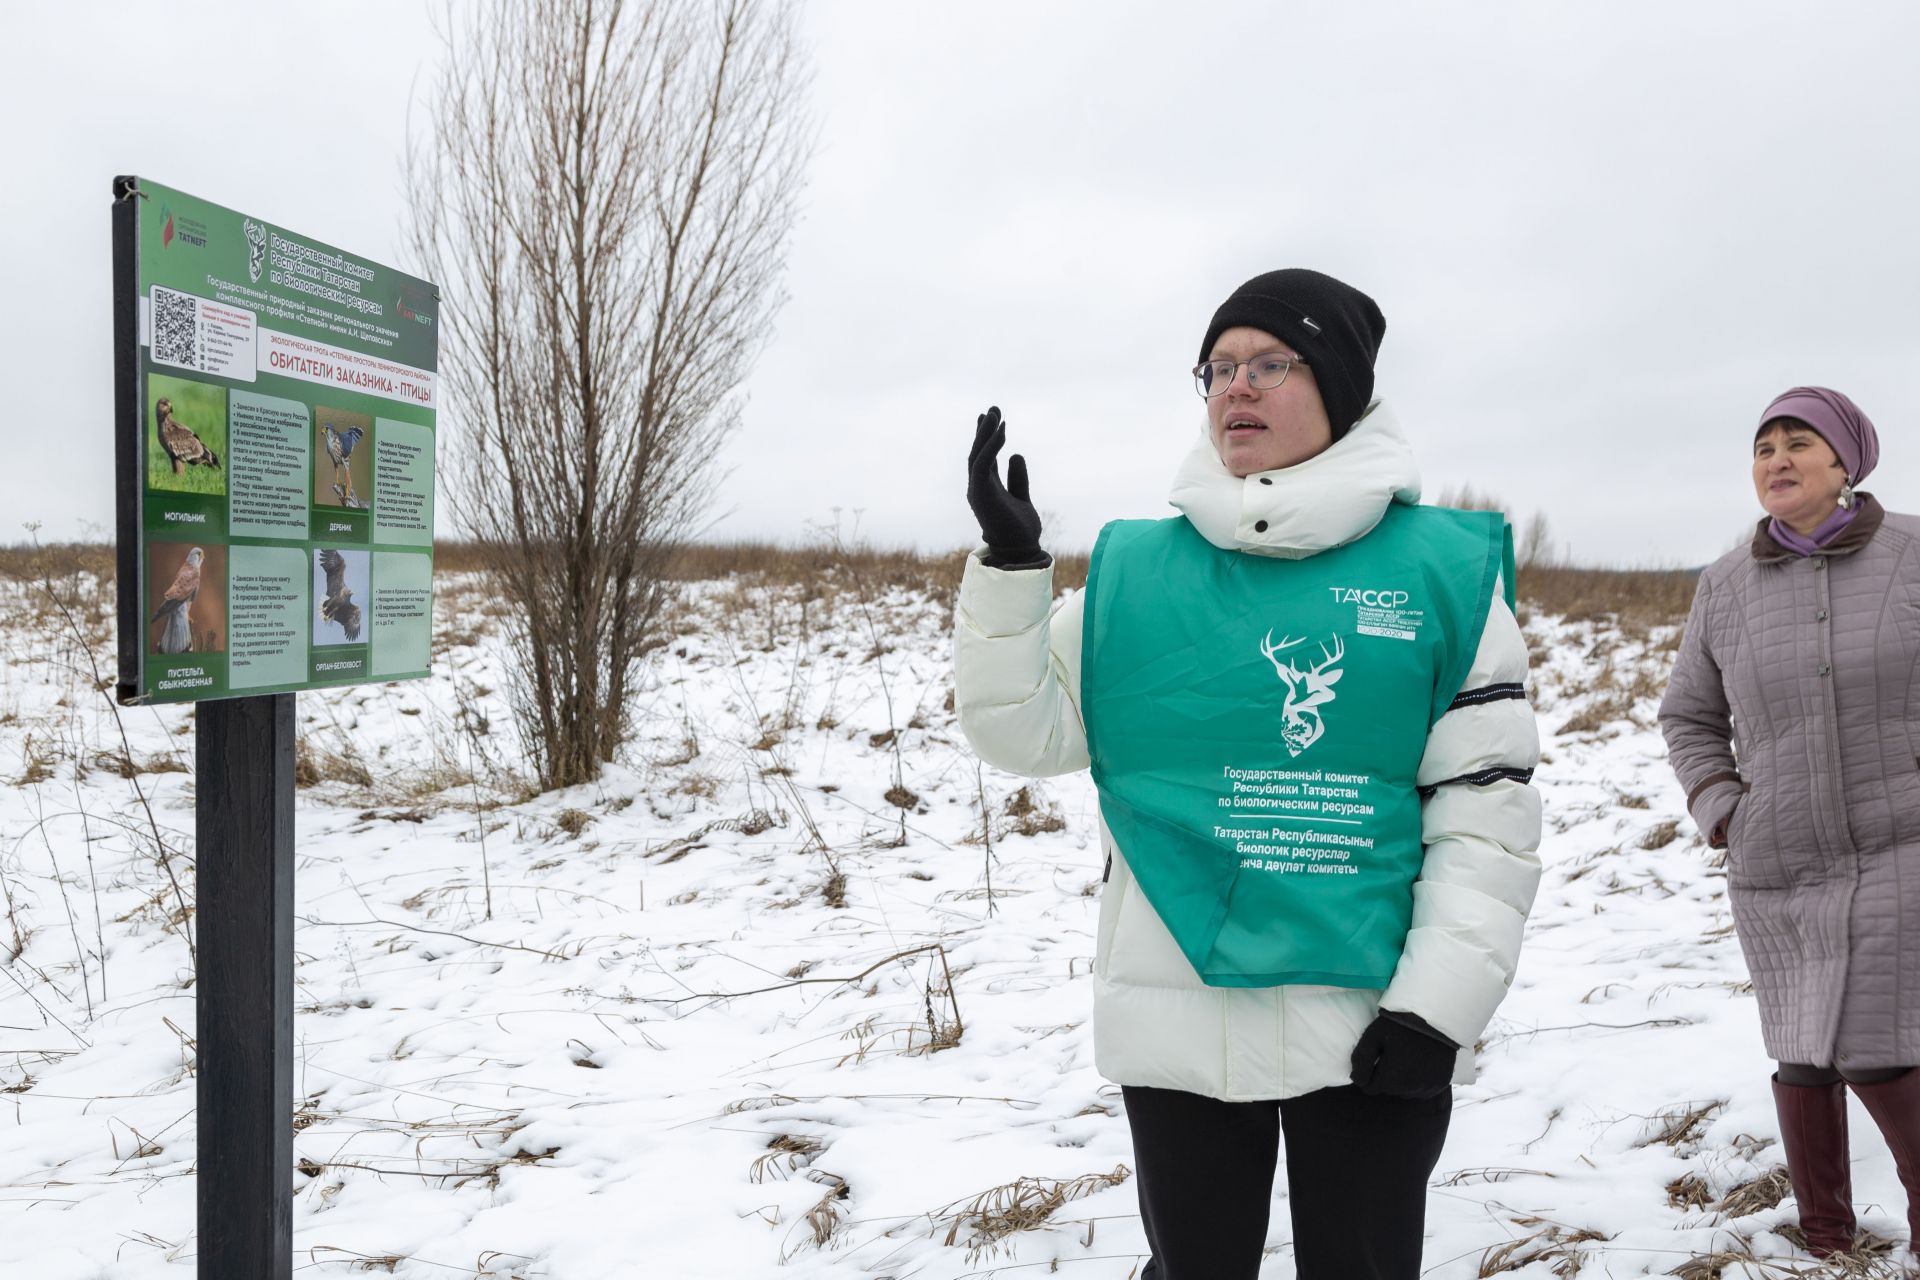 Познакомиться с флорой и фауной, которые с трепетом берегут в заказнике «Степной» Лениногорского района, теперь можно даже зимой!